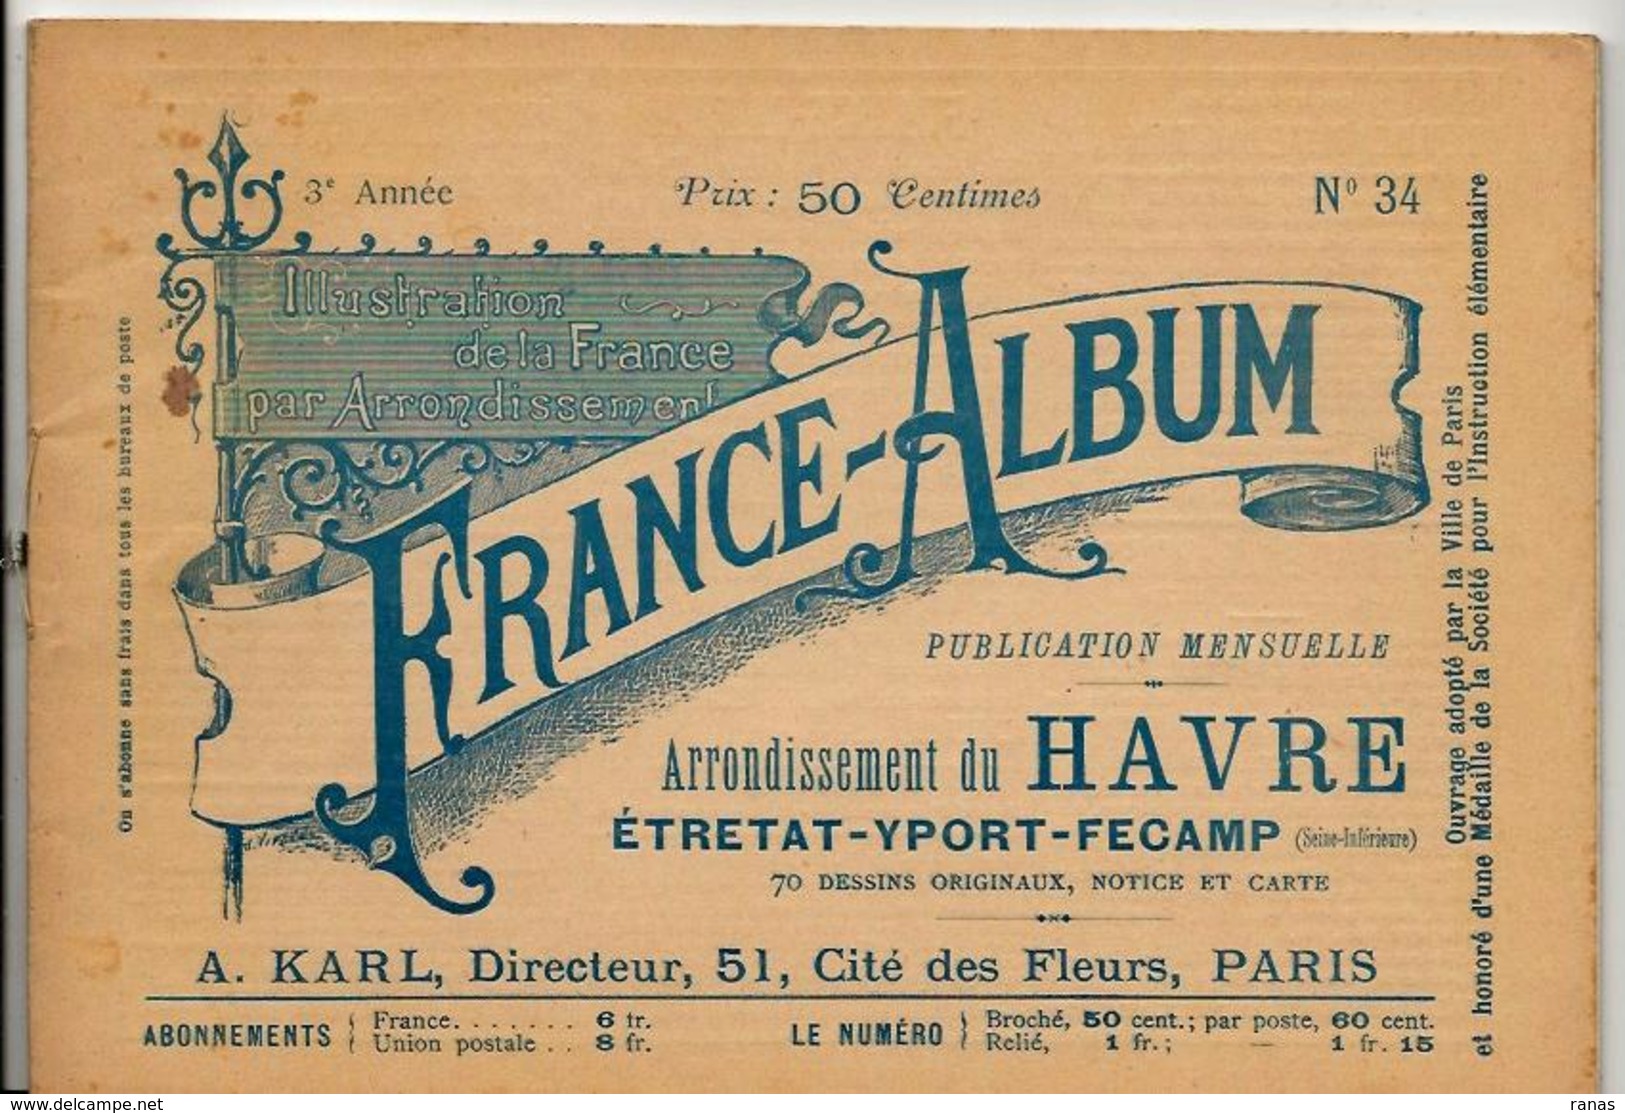 Seine Inférieure France Album De A. KARL, Carte Gravures Texte Publicités 1895 - Tourism Brochures